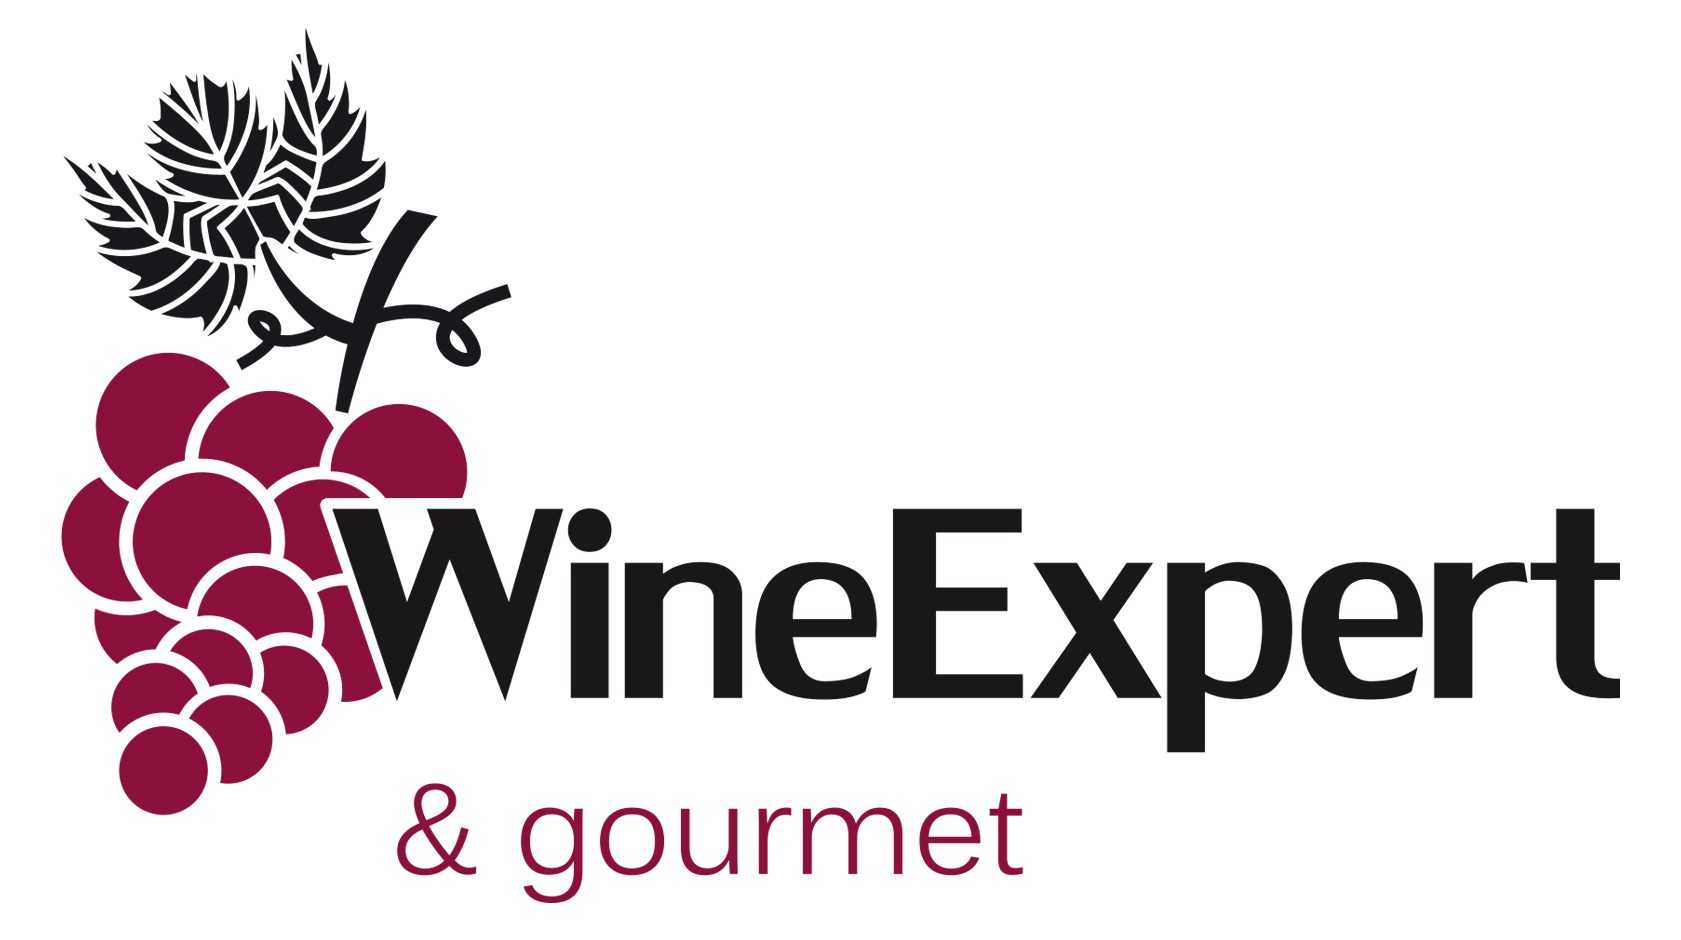 VP WineExpert & Gourmet